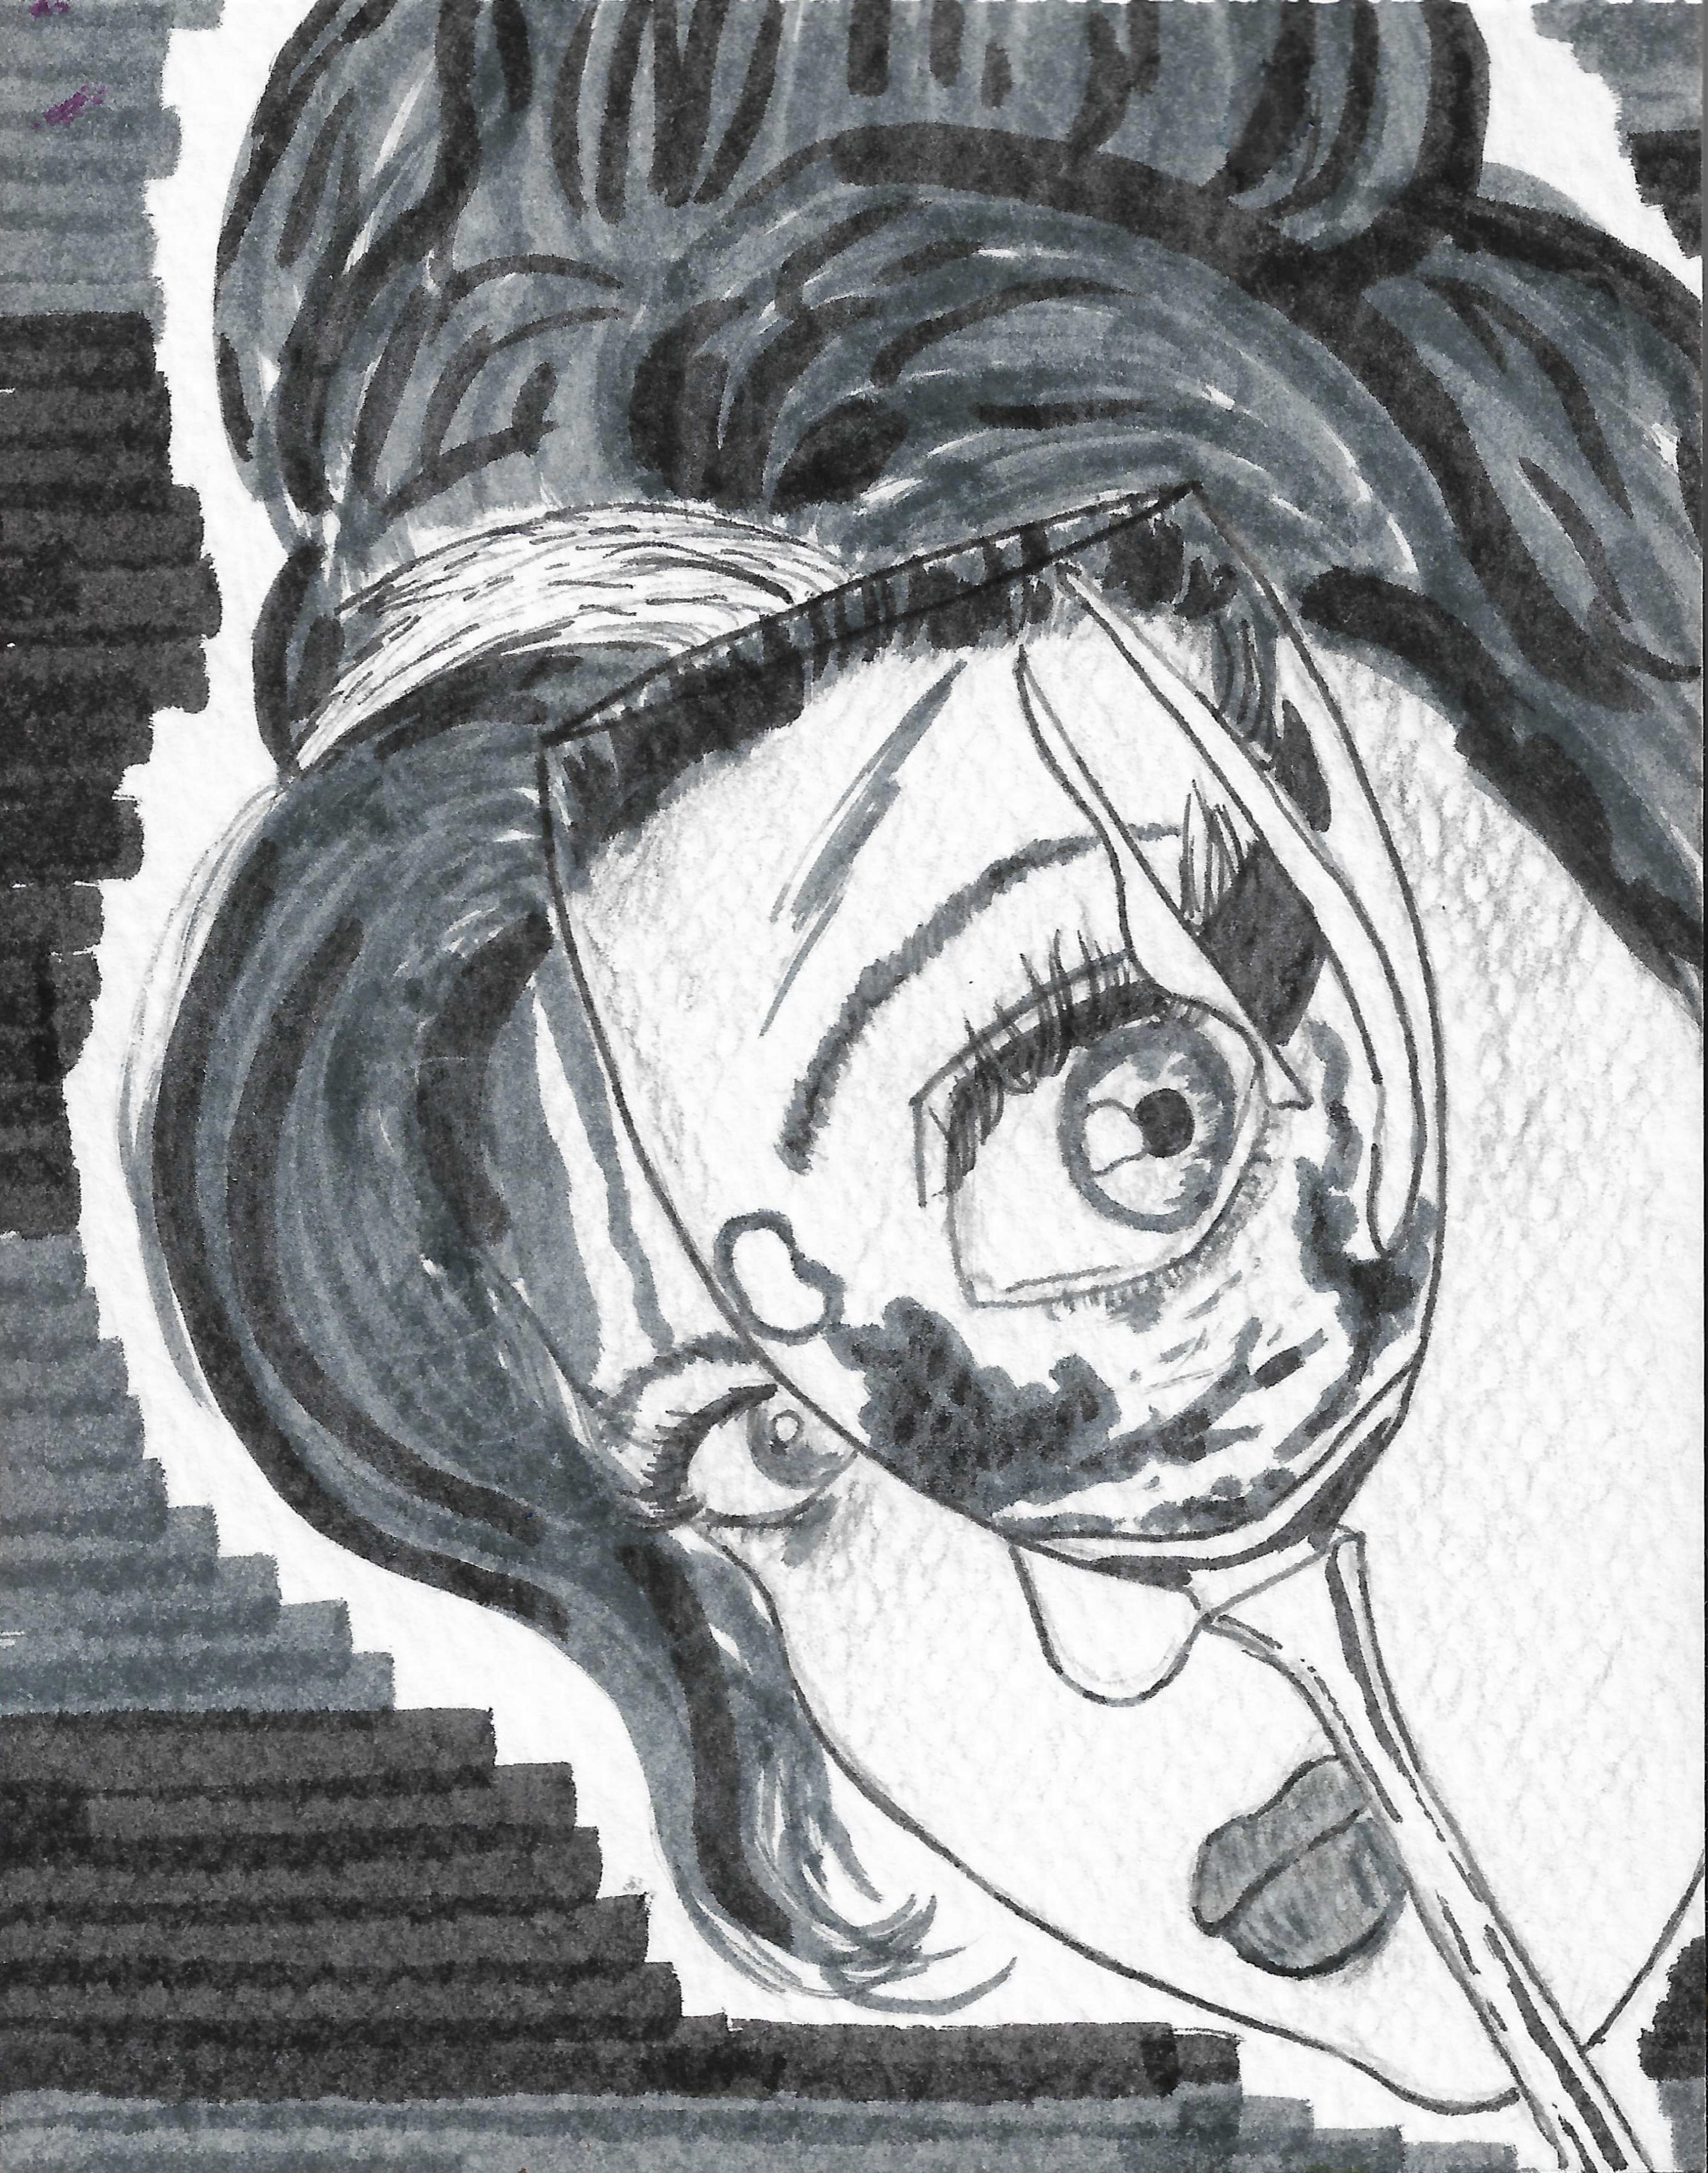 felt tip pen illustration of Amy Winehouse